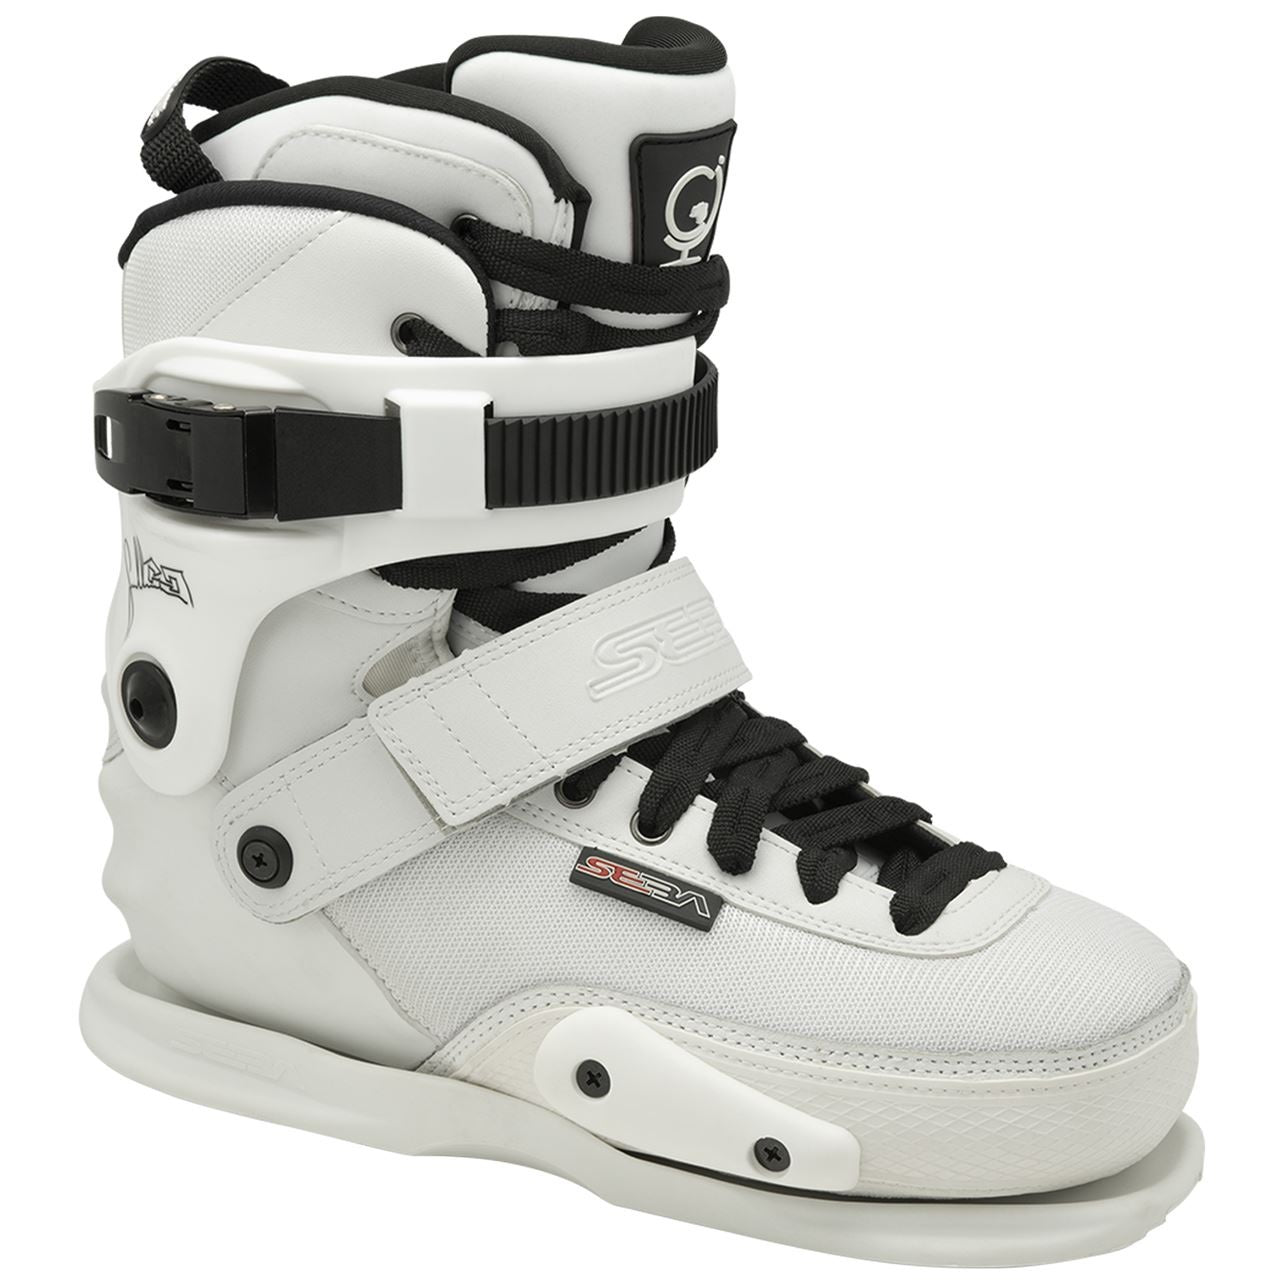 Seba CJ2 Prime Aggressive Skates Boot Only - White